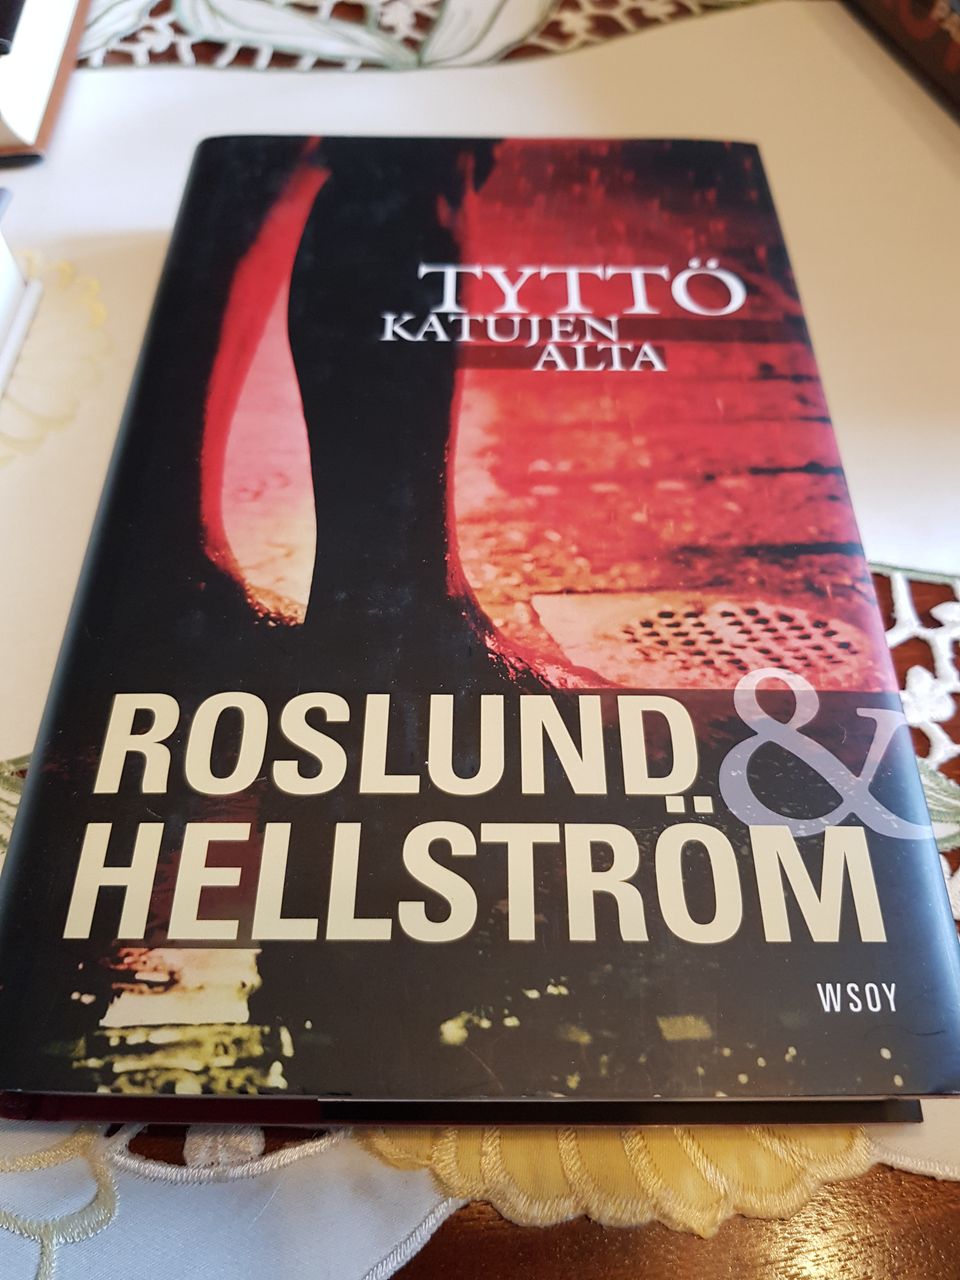 Tyttö katujen alta. Roslund& Hellström.